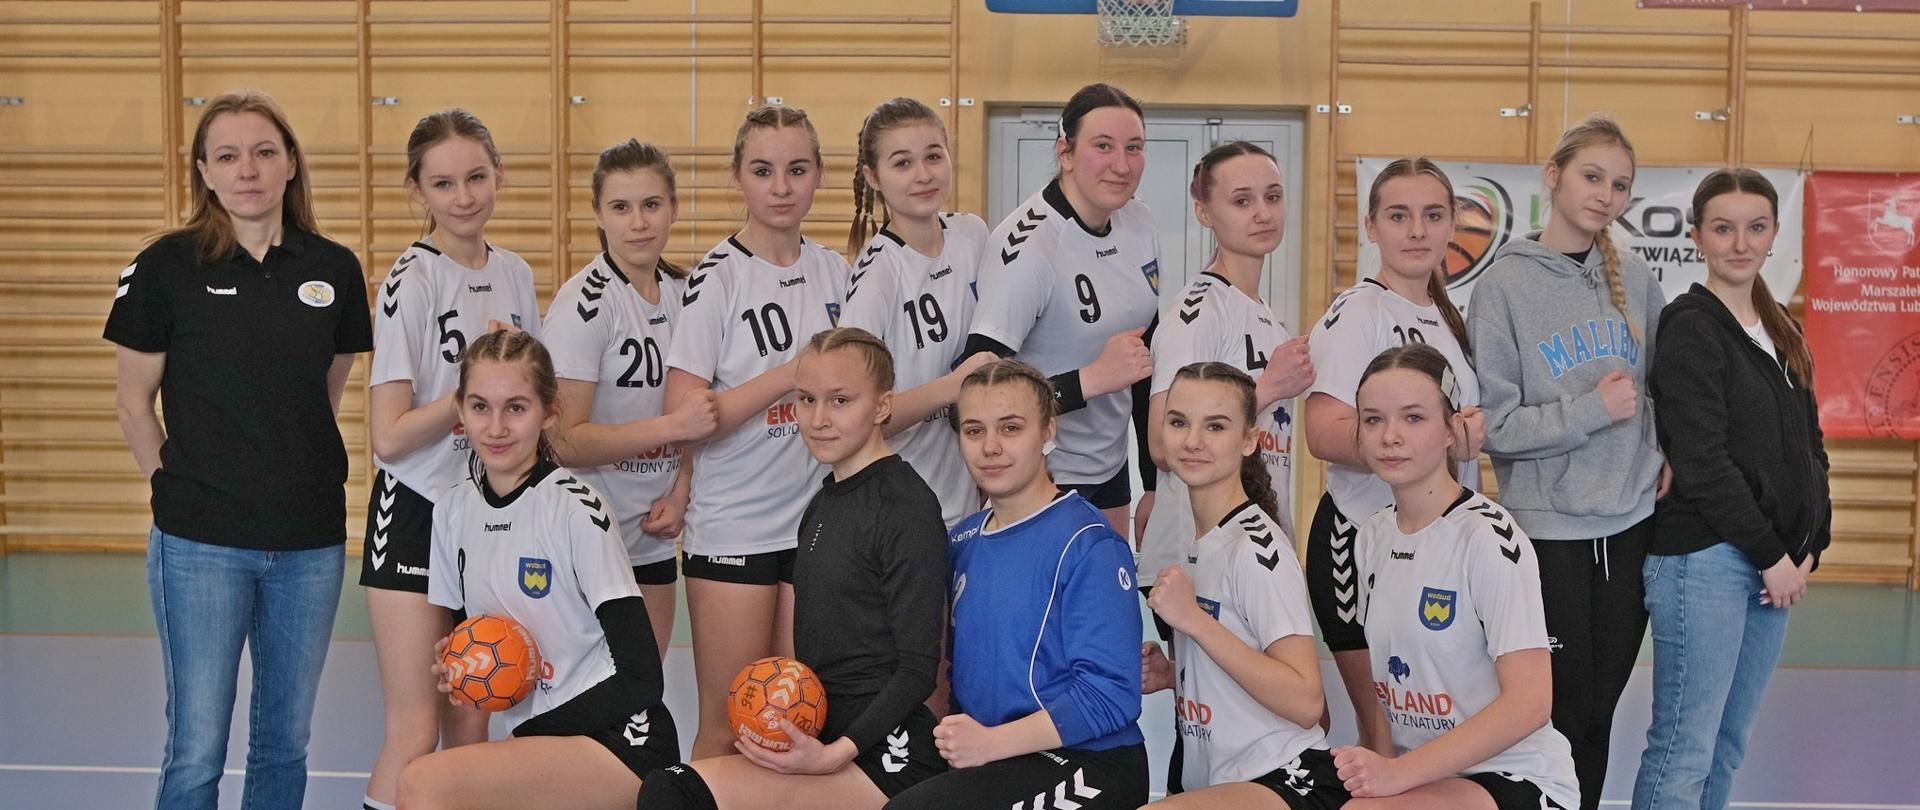 Zdjęcie przedstawia 14 dziewcząt KMKS Kraśnik, stojących na hali sportowej. Pięć zawodniczek klęczy na jedno kolano, zaś kolejne dziewięć stoi ustawione bokiem w tylnym rzędzie. Po lewej stronie zawodniczek stoi trenerka p. Agata Kurlej.